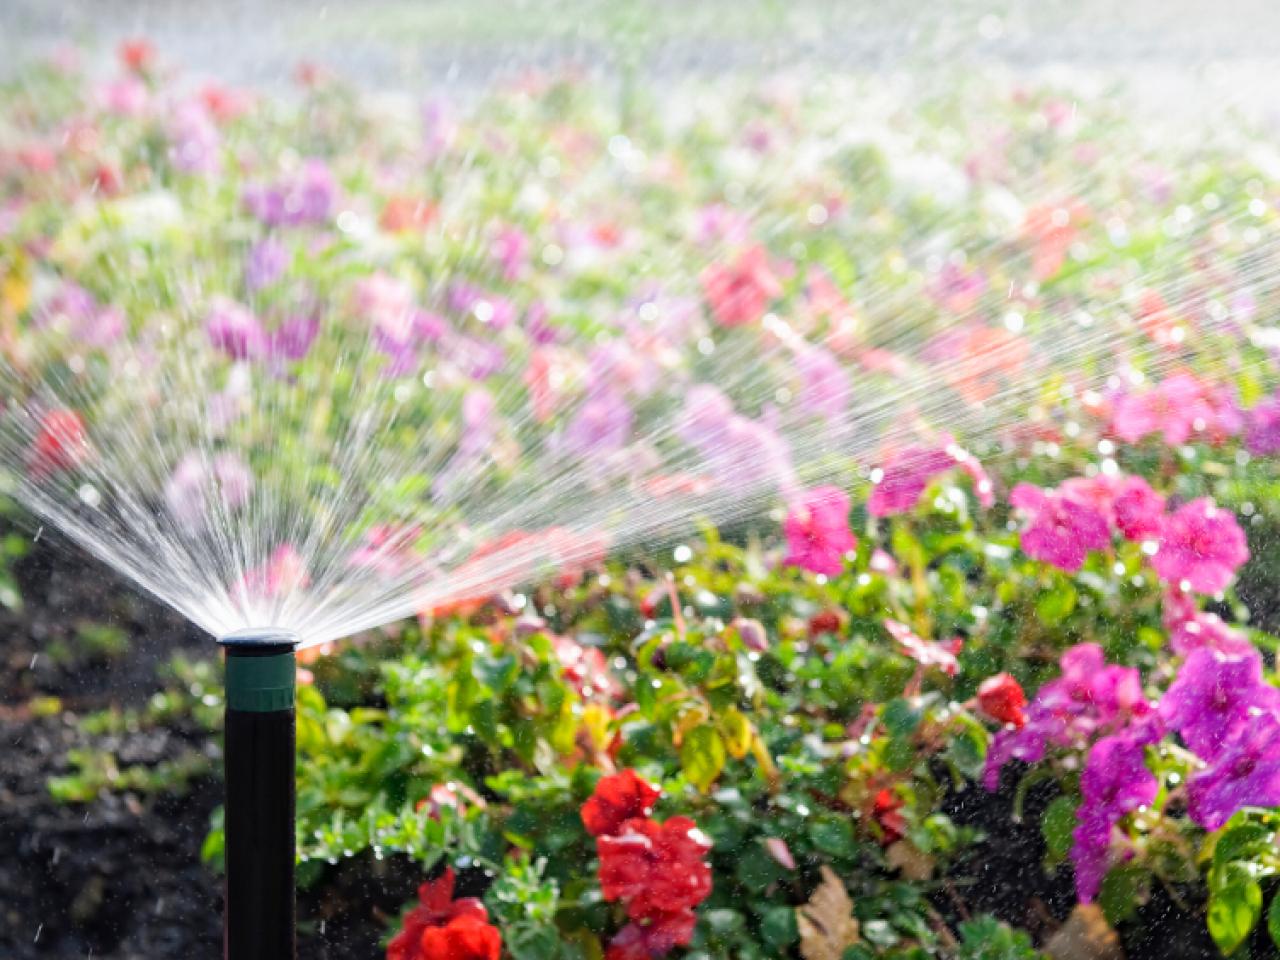 Hệ thống phun nước tự động dành cho sân vườn nhà bạn